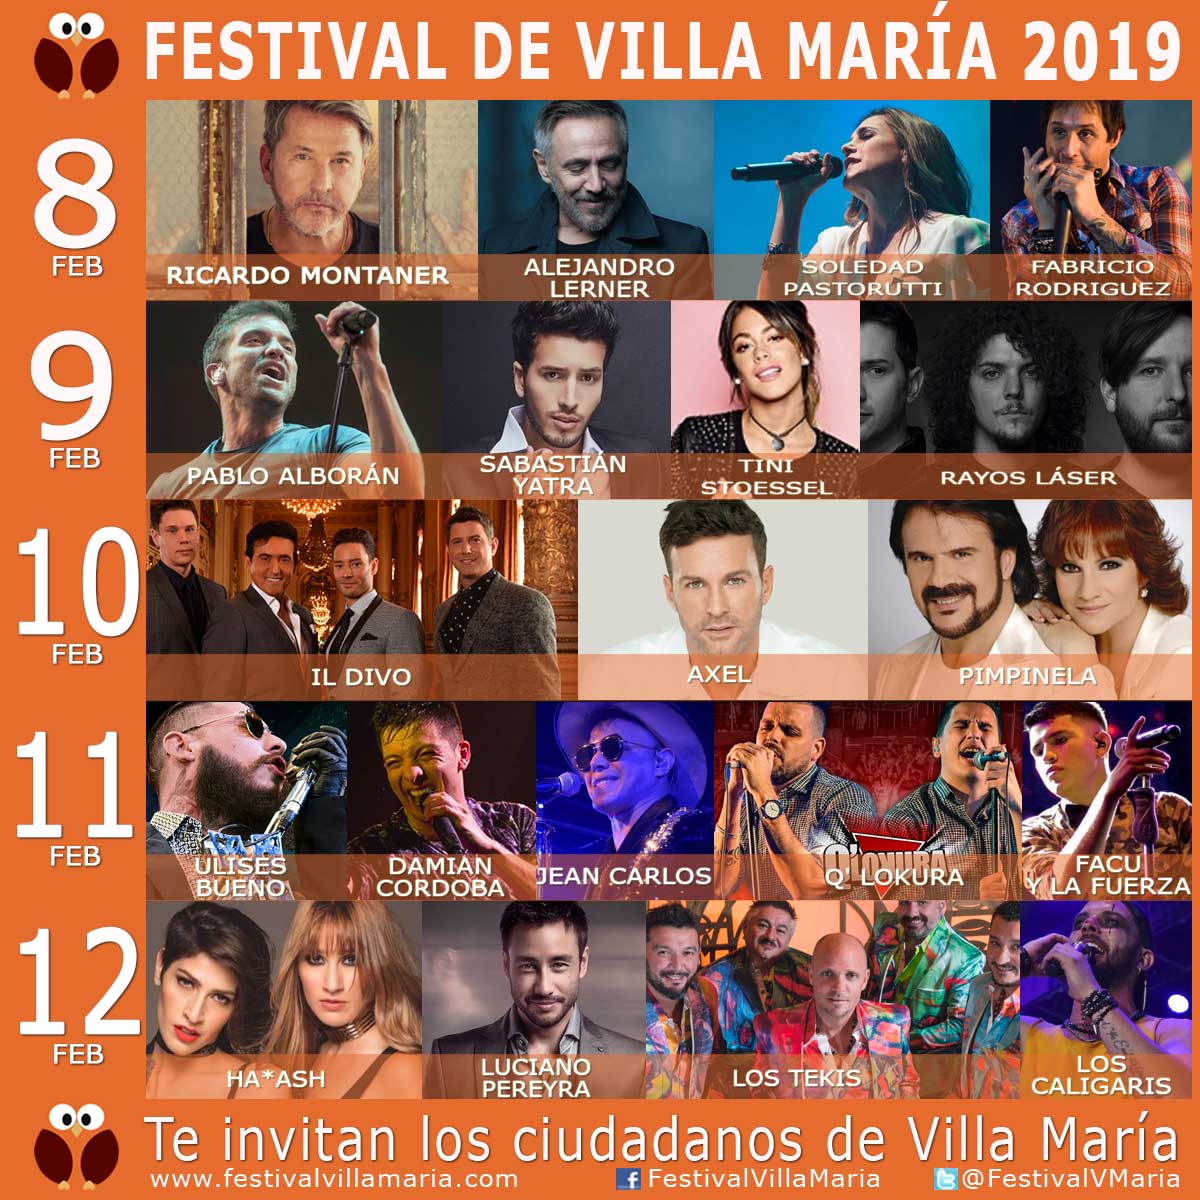 Sebastian Yatra, Il Divo y Tini serán algunas de las figuras del Festival de Peñas de Villa Maria